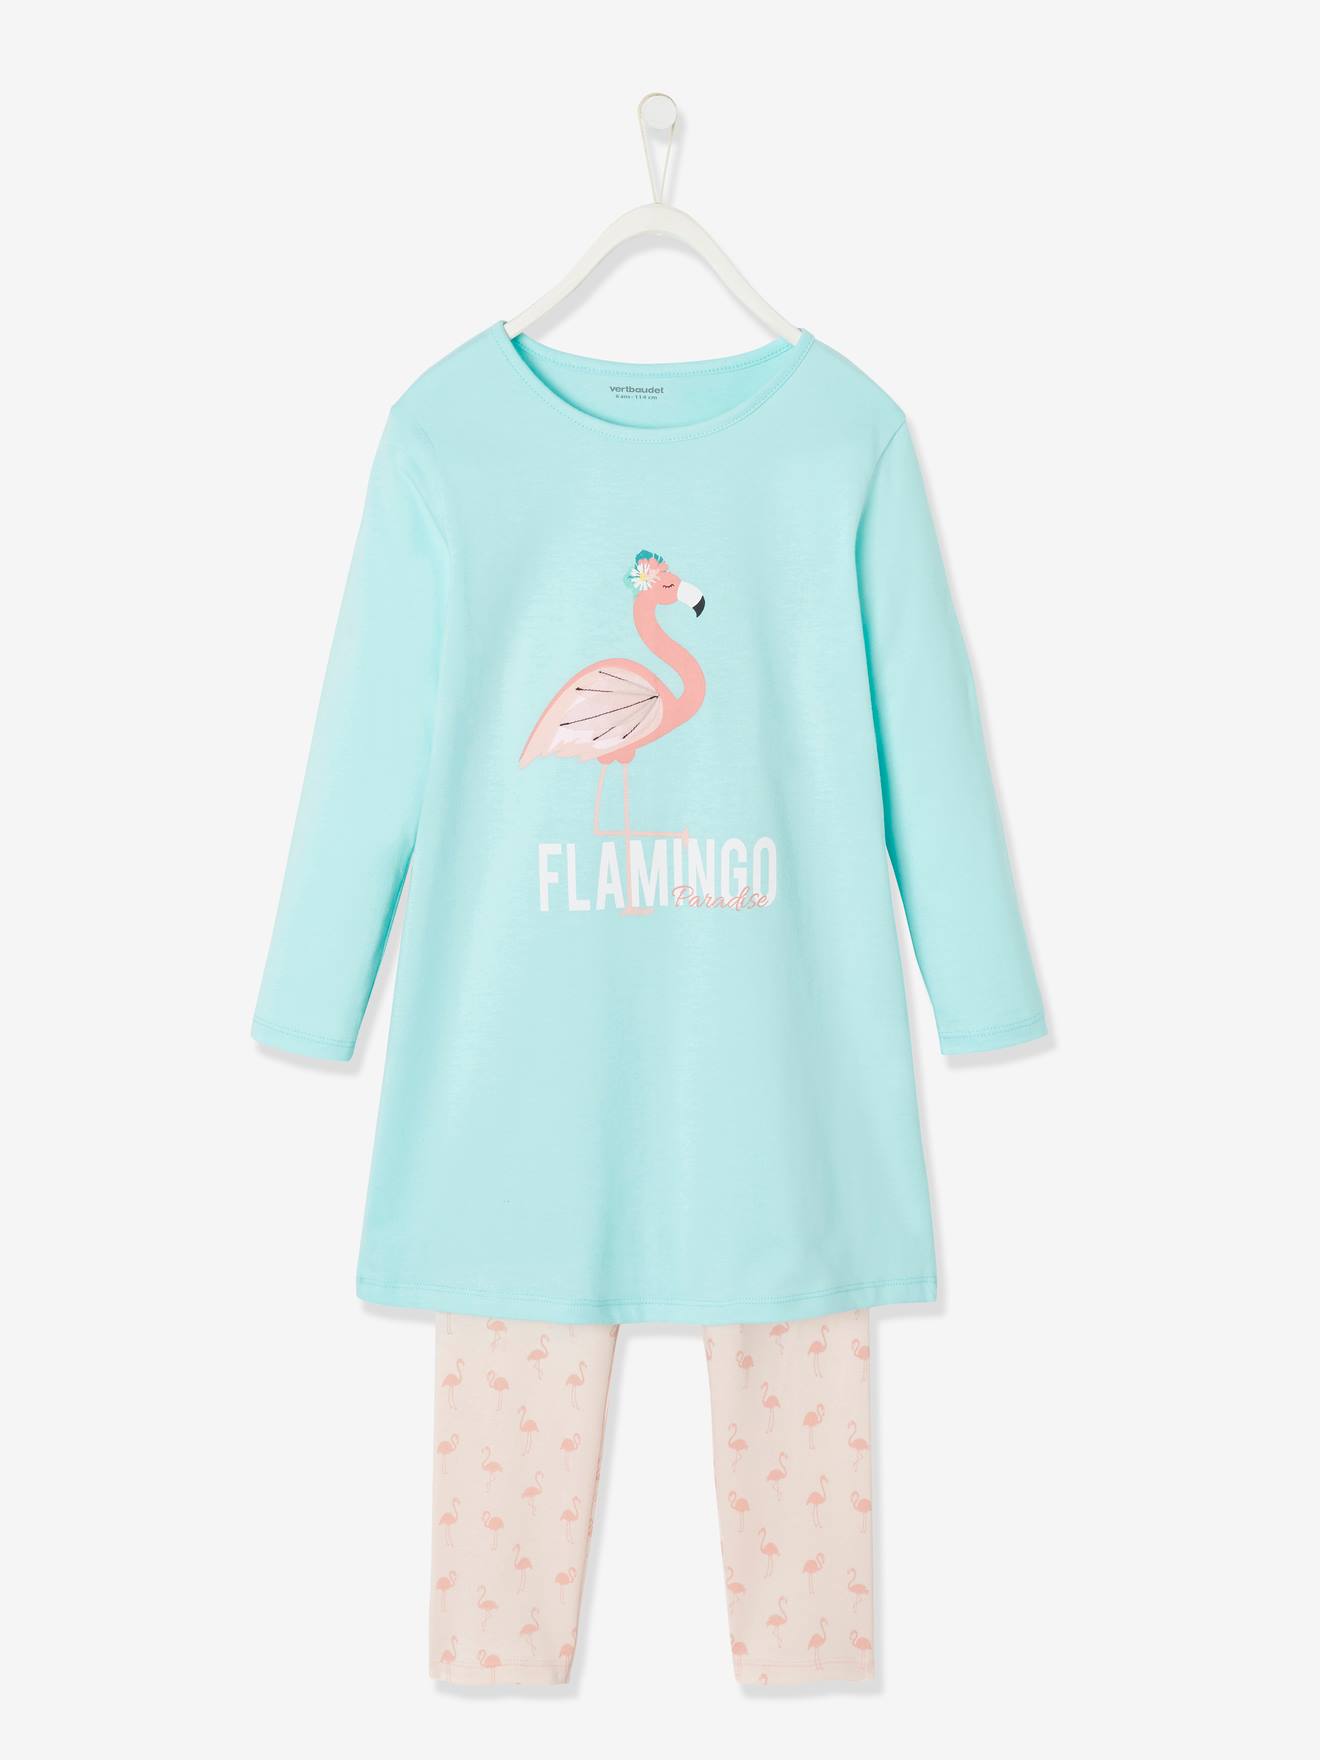 Chemise de nuit + legging fille Flamingo bleu ciel